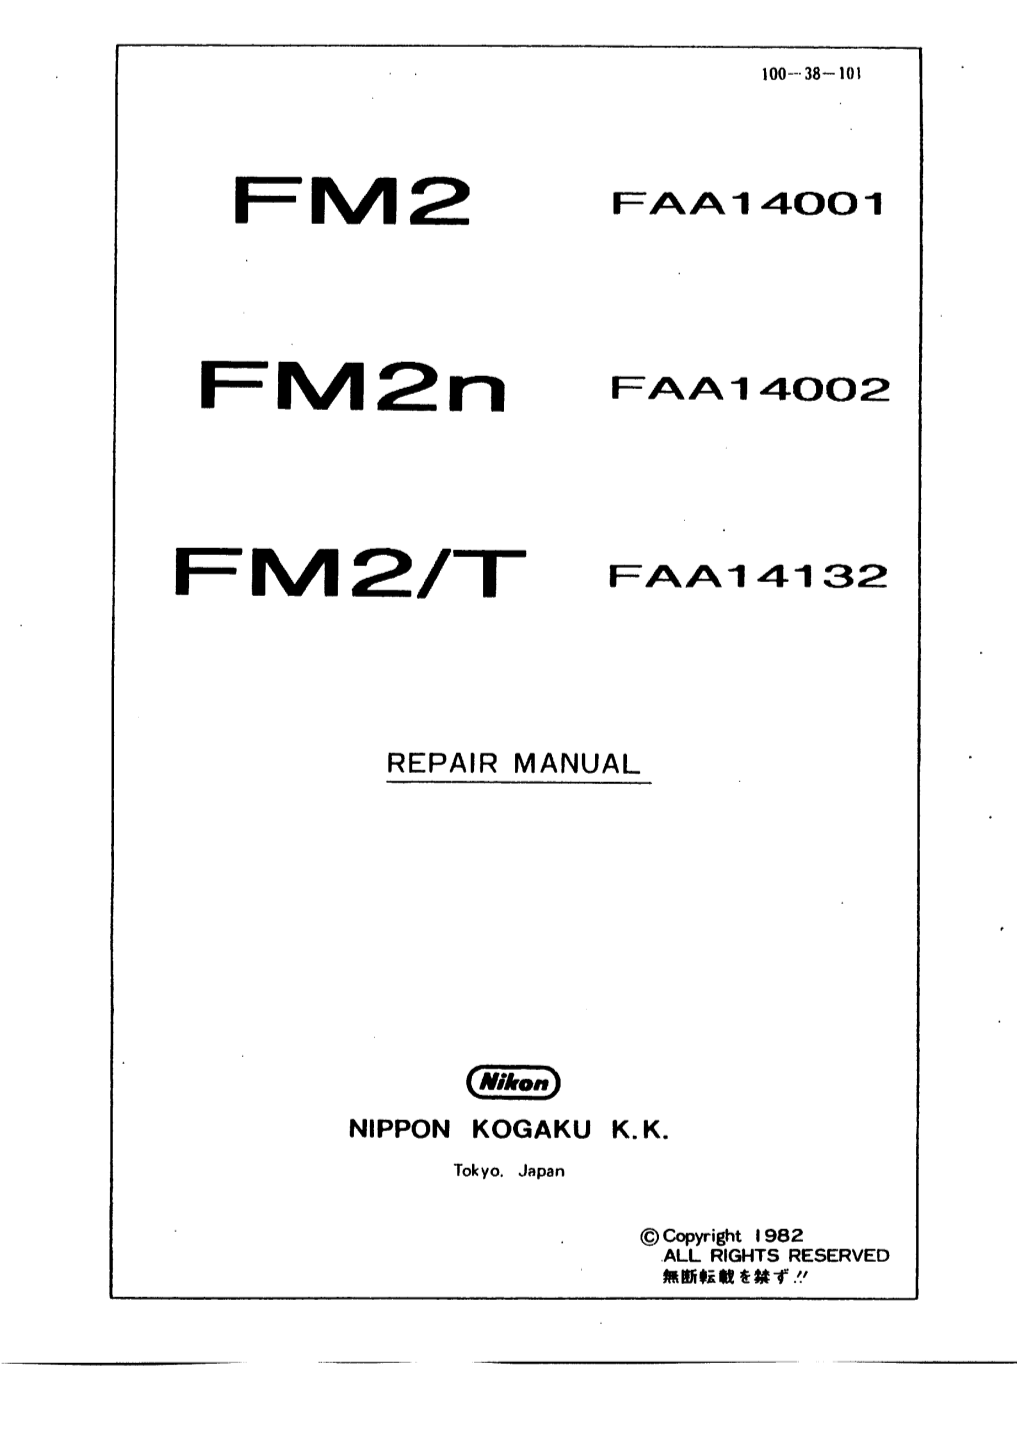 Nikon FM2 Repair Manual